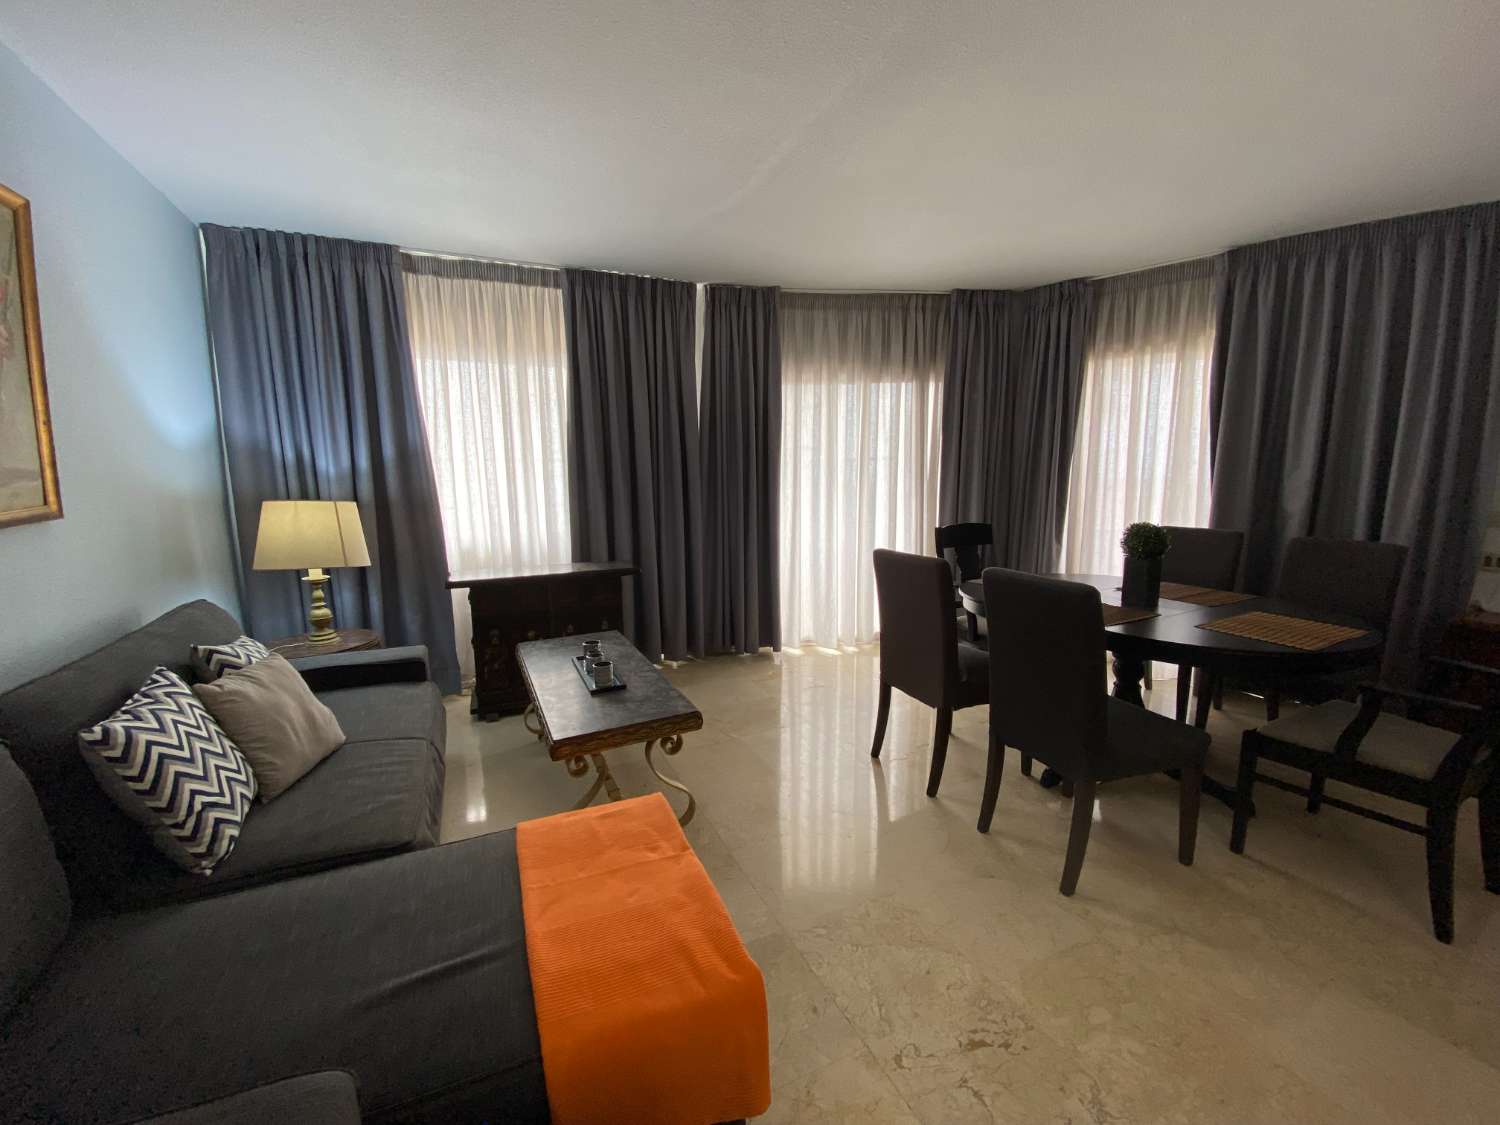 Excelente apartamento en la playa de Fuengirola